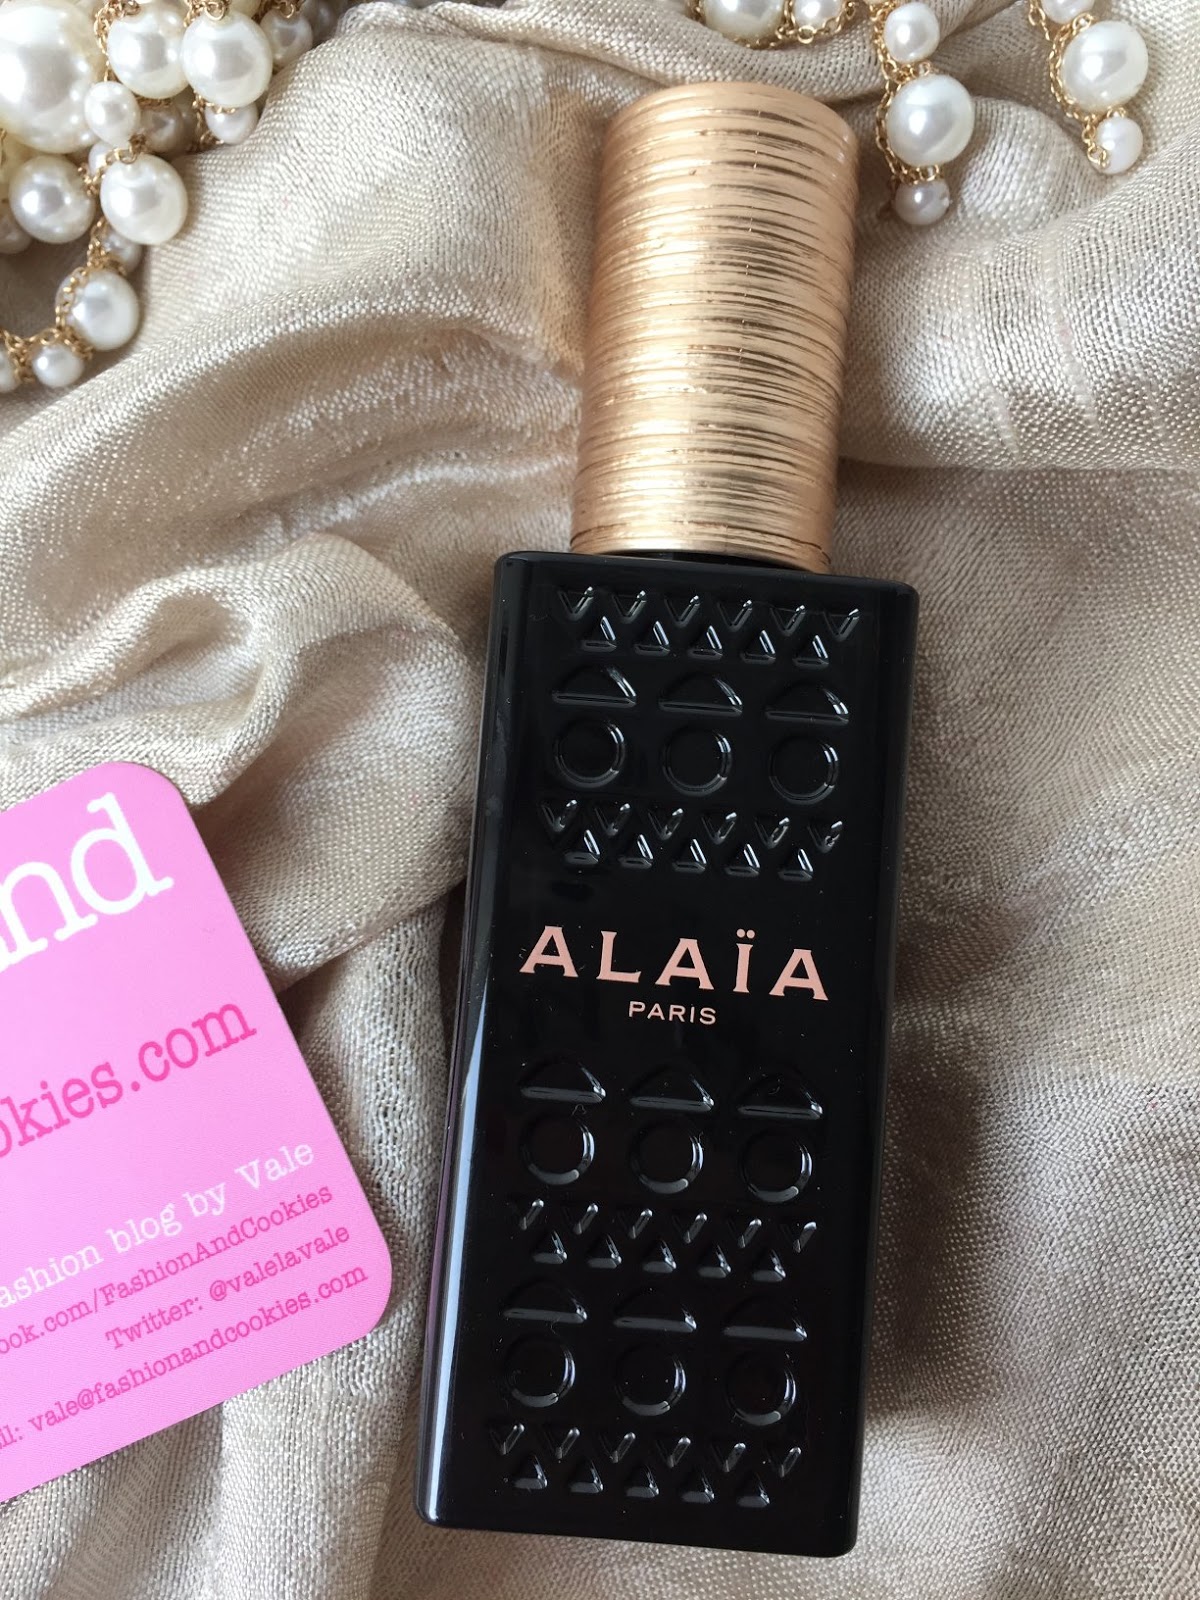 Alaïa Paris Eau de parfum review on Fashion and Cookies fashion and beauty blog, beauty blogger